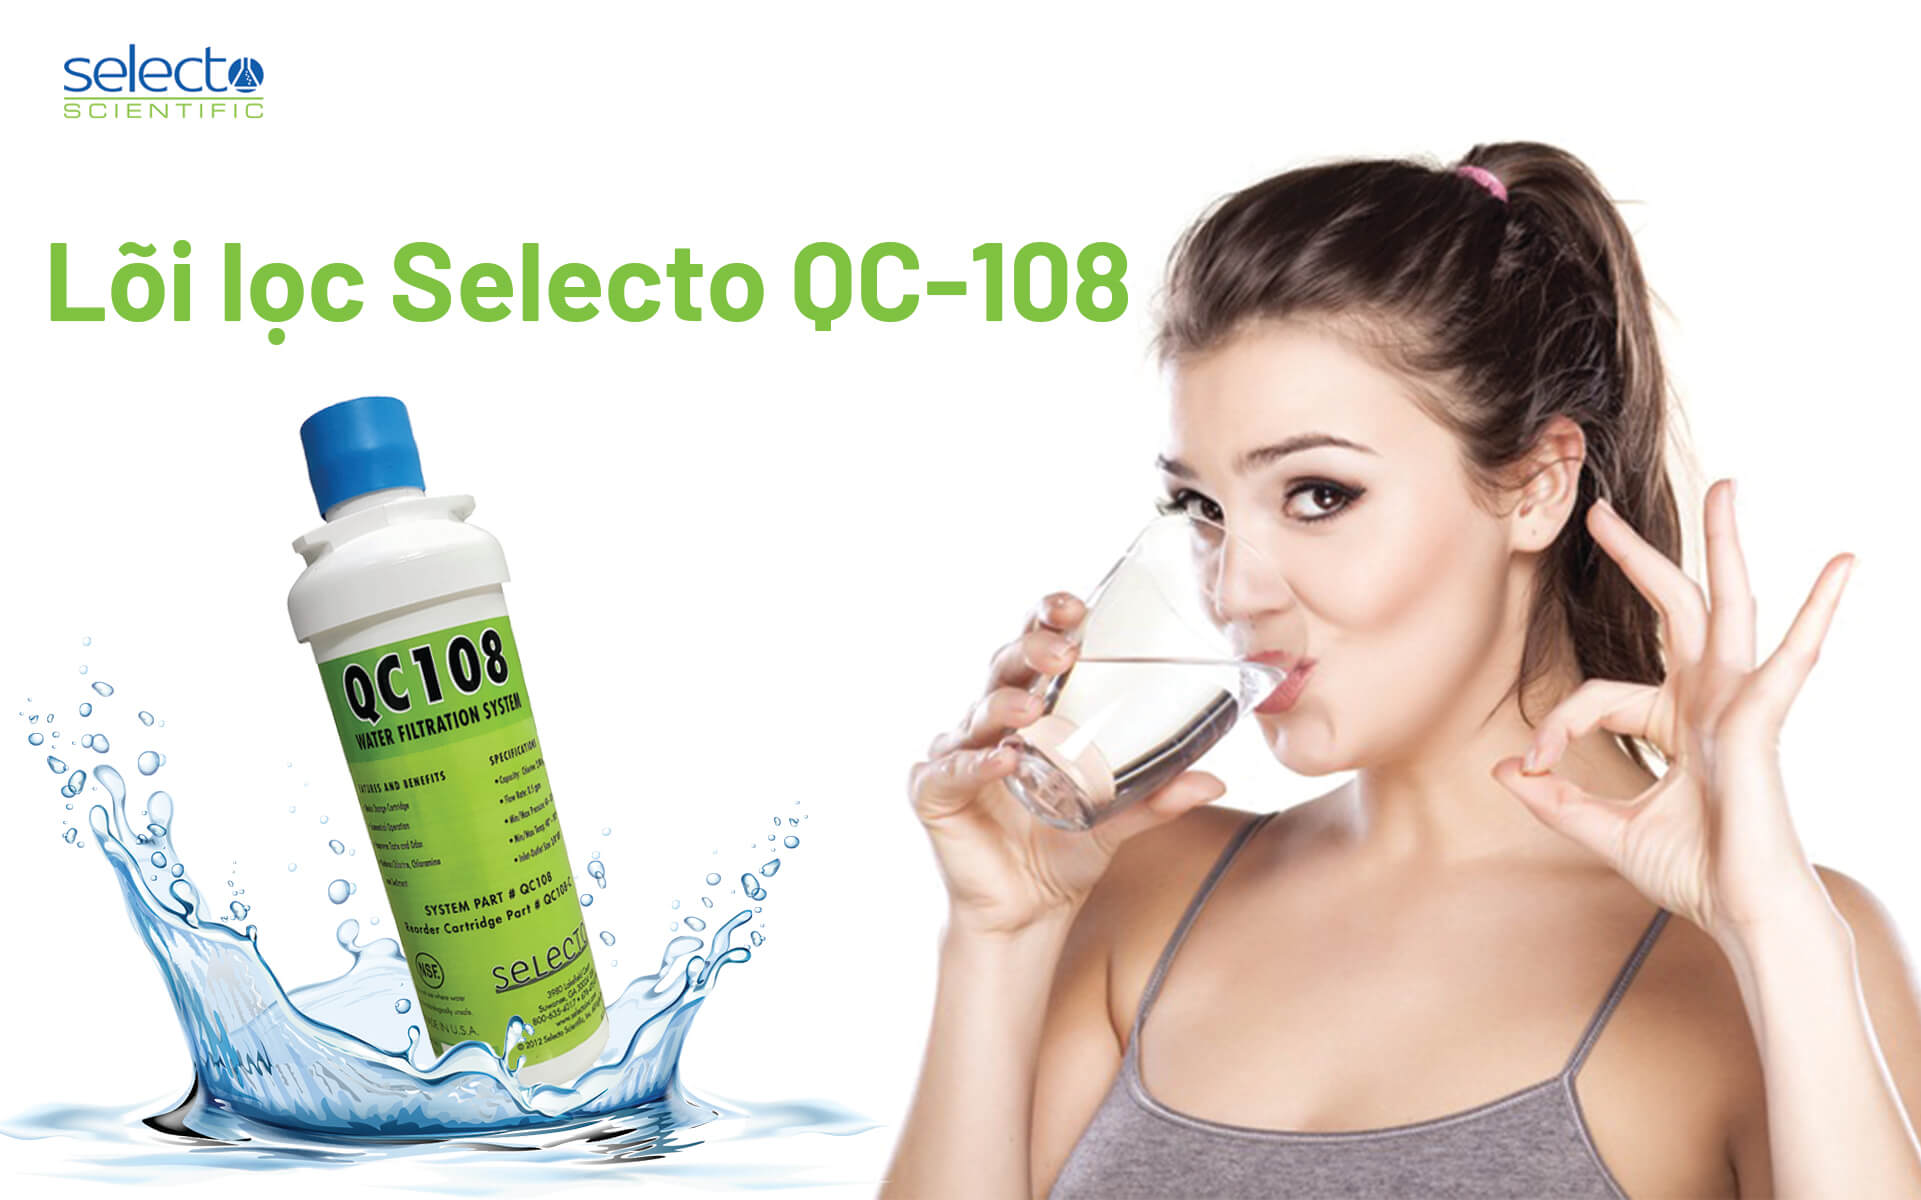 Lõi lọc Selecto QC 108 cung cấp nước uống trực tiếp